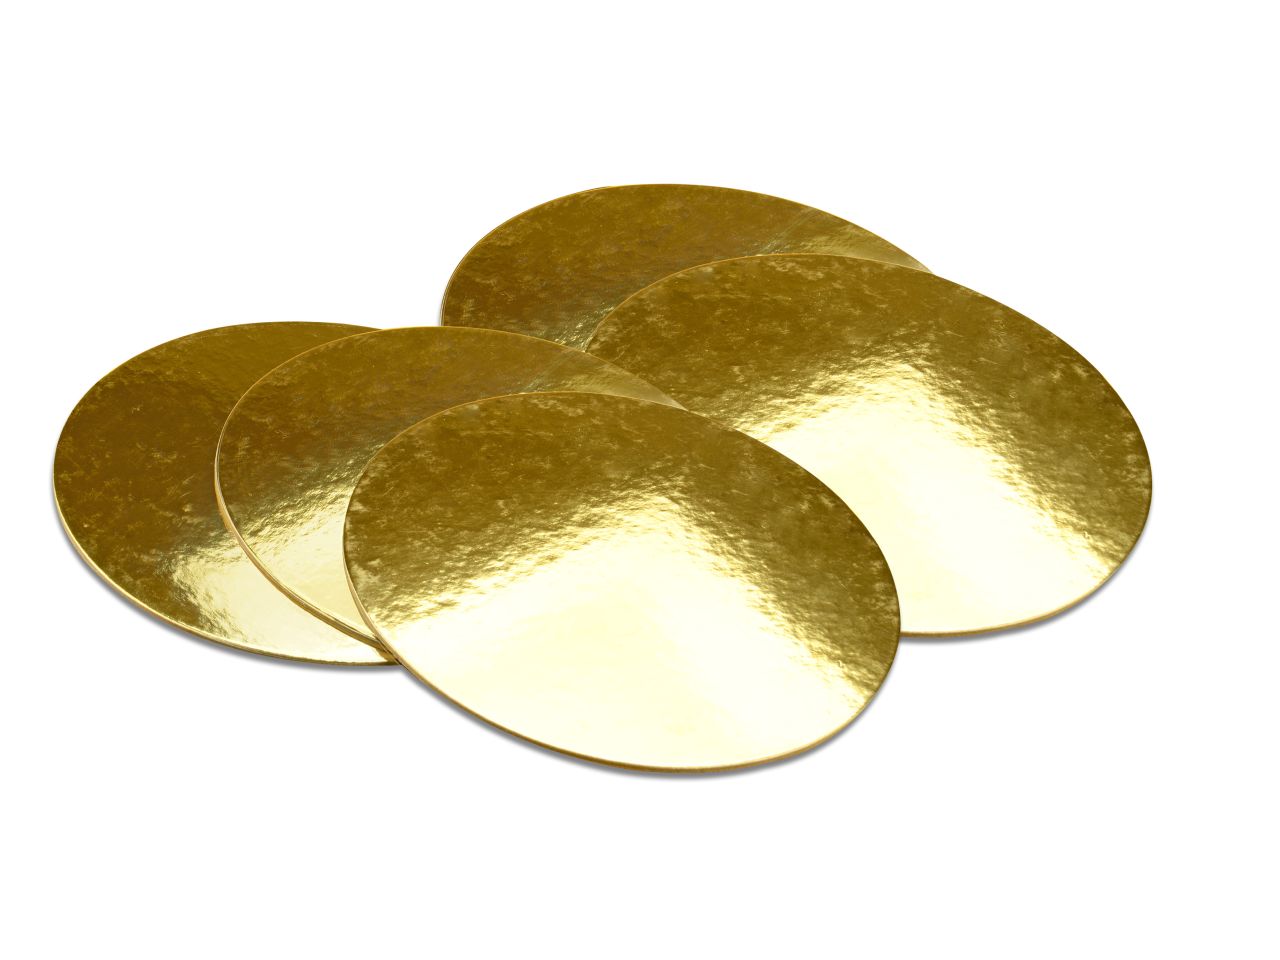 Golden Plate 28cm gold glänzend 5 Stück